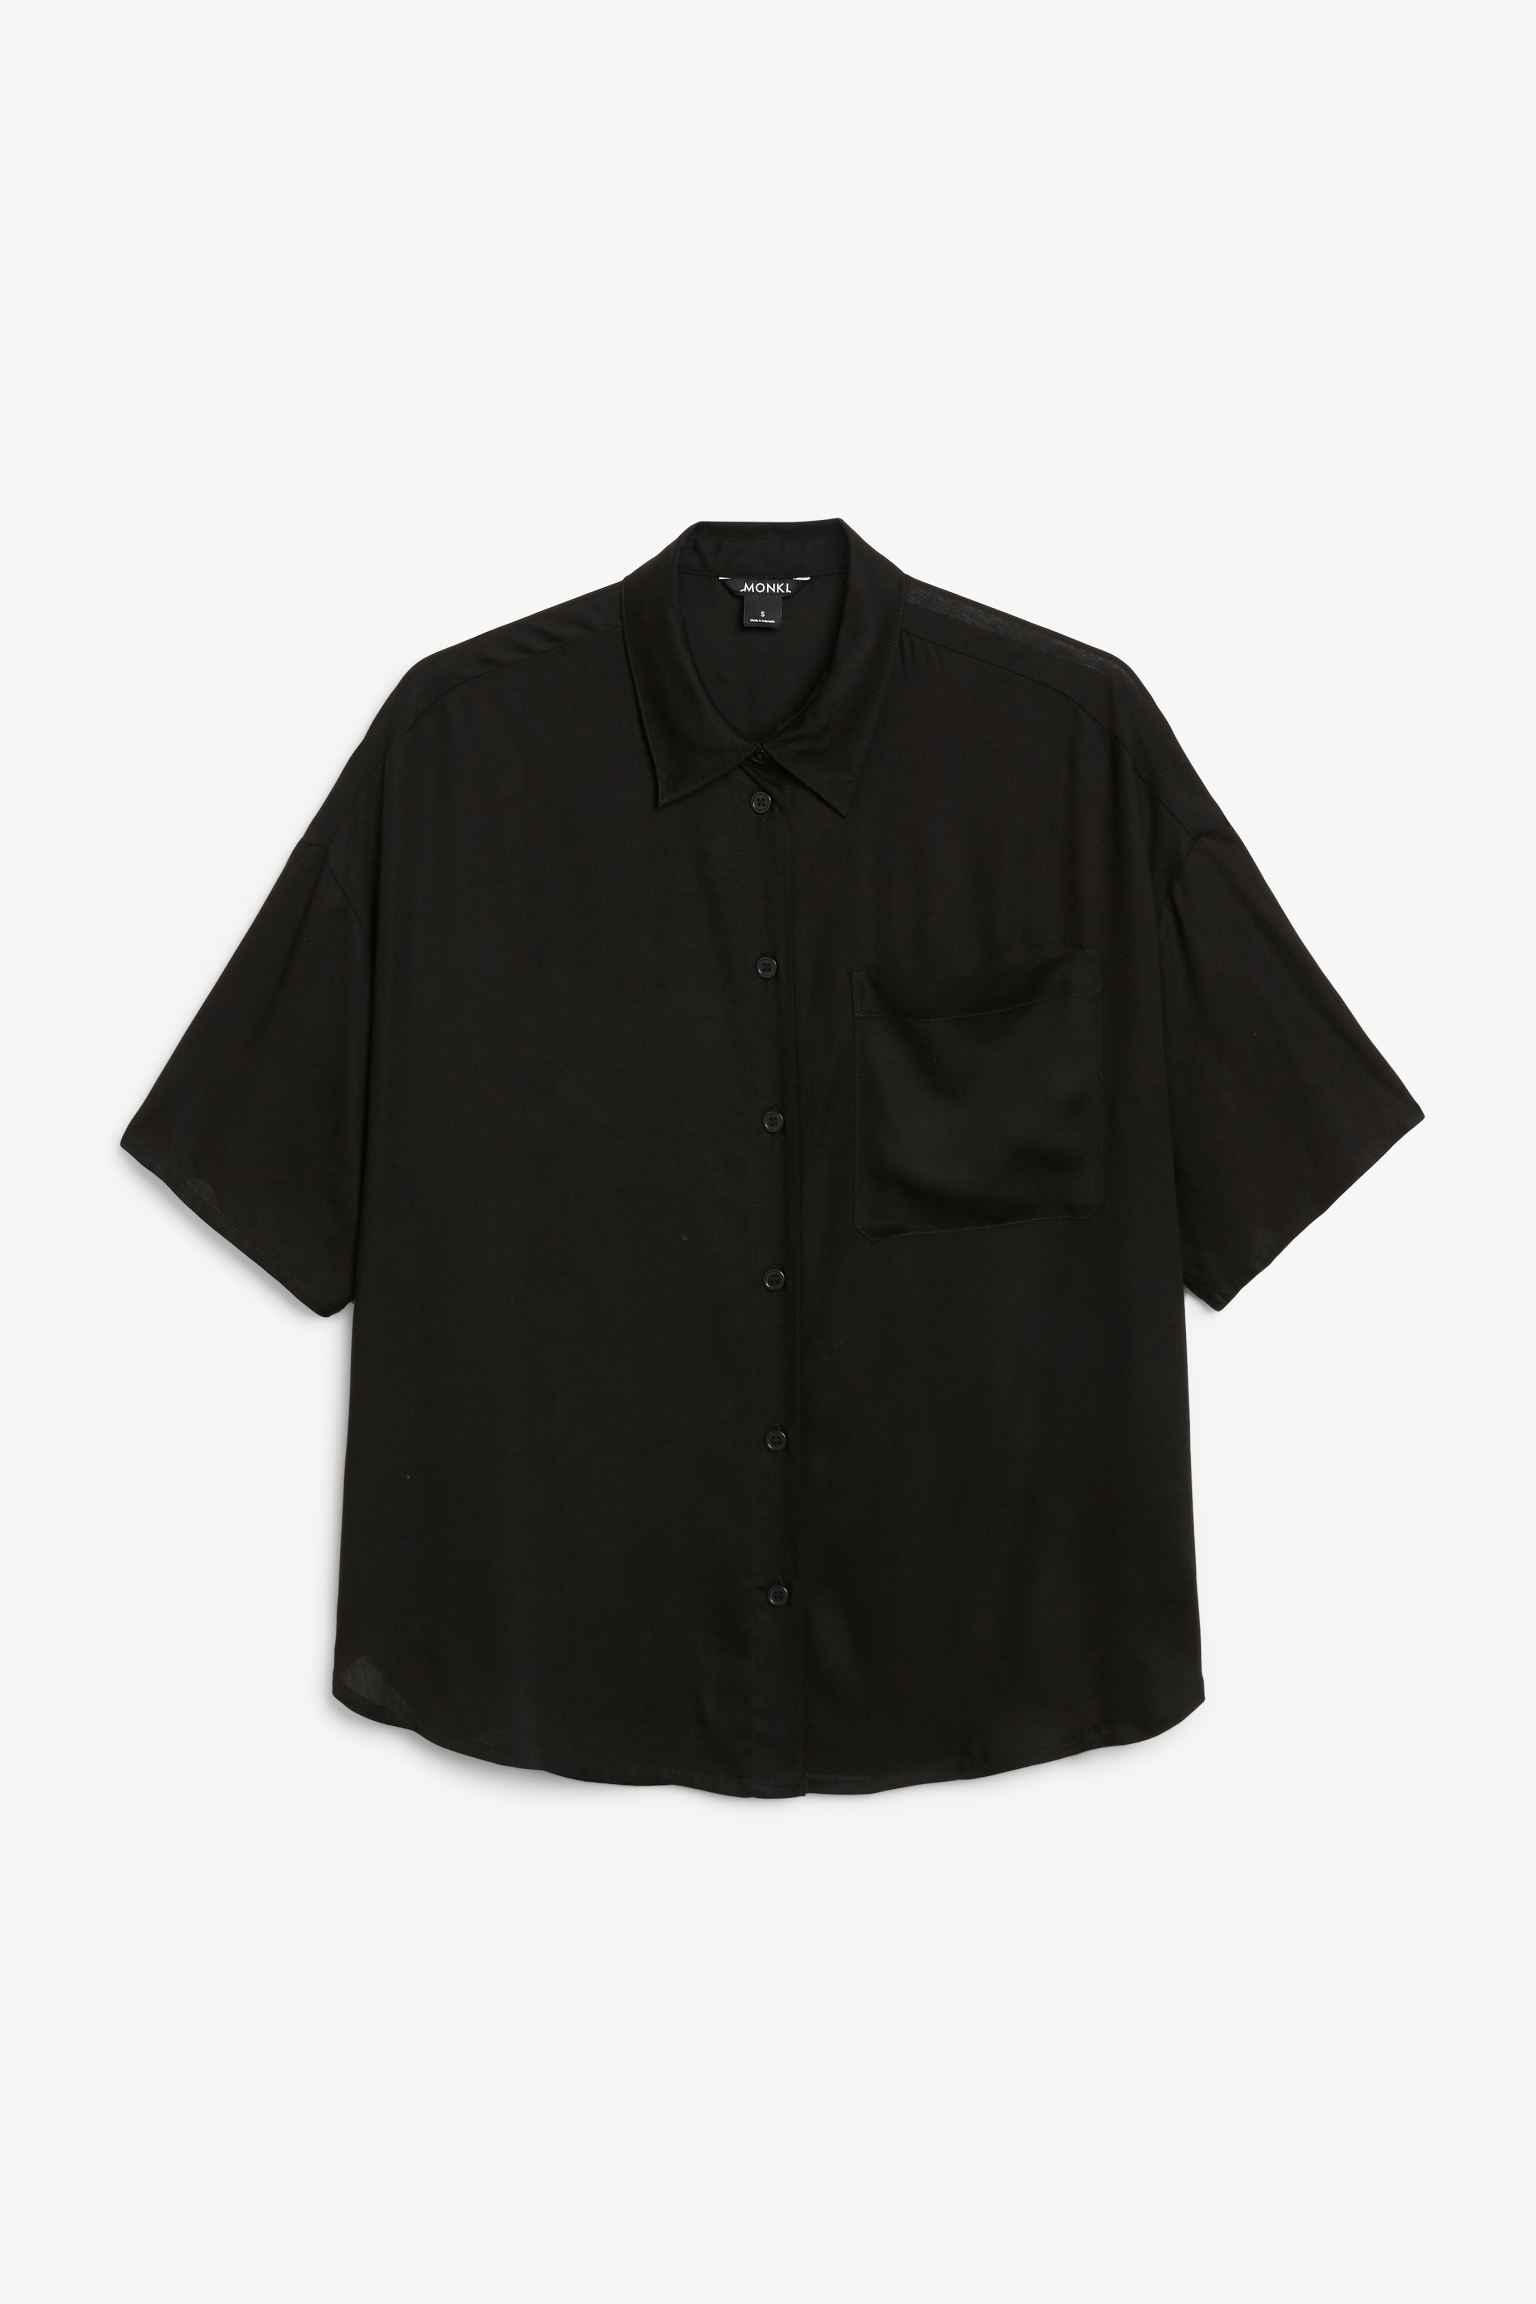 Рубашка женская Monki 972319022 черная S (доставка из-за рубежа)